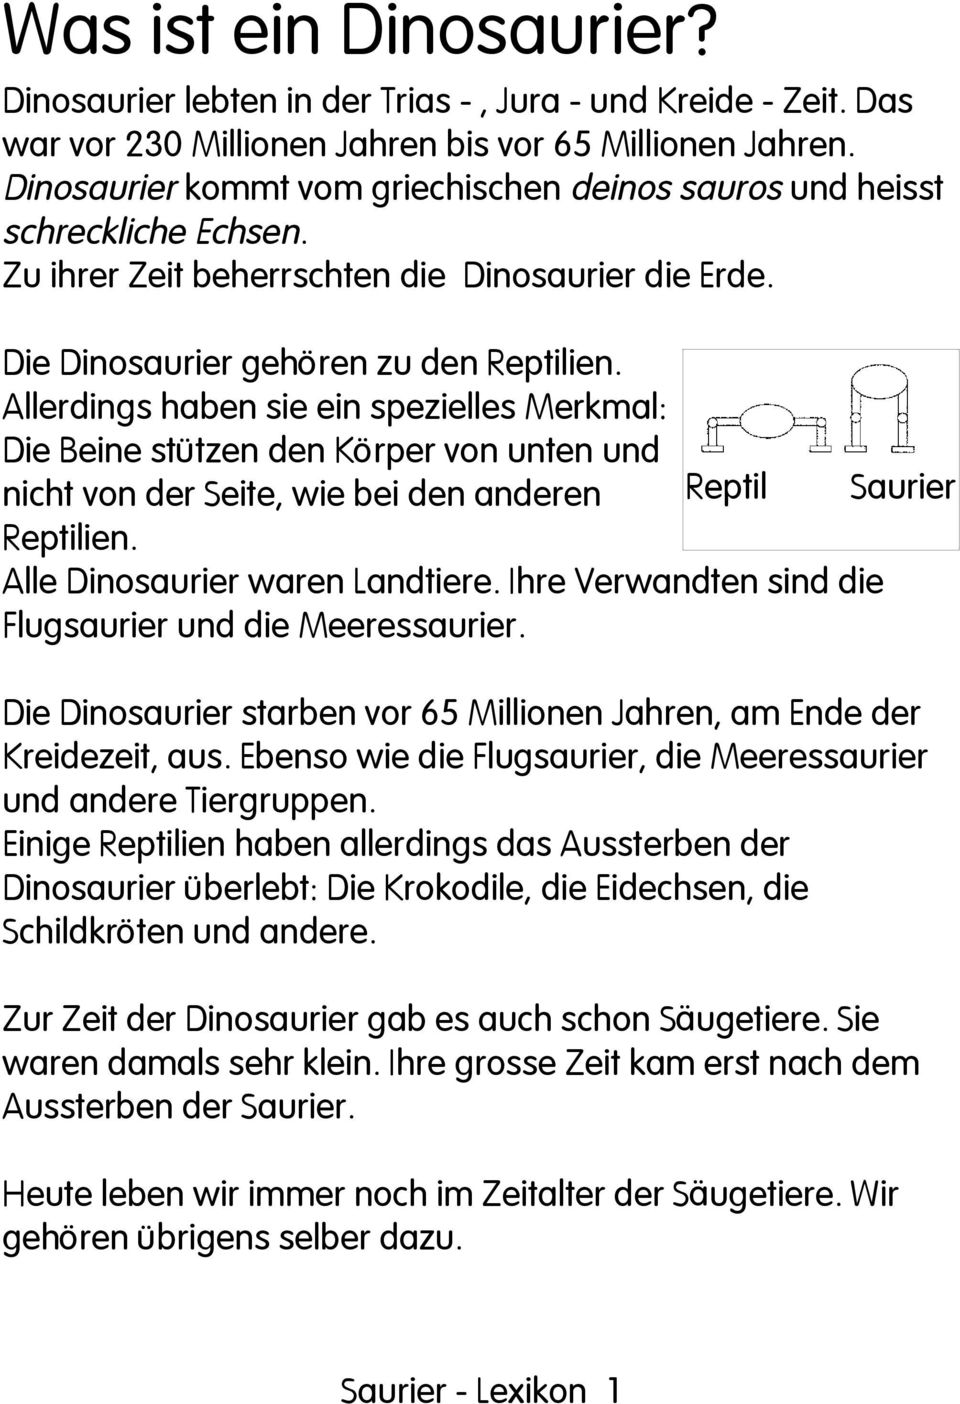 Saurier Lexikon. Dieses Saurier  Lexikon geh\u00f6rt: Saurier  Lexikon  PDF